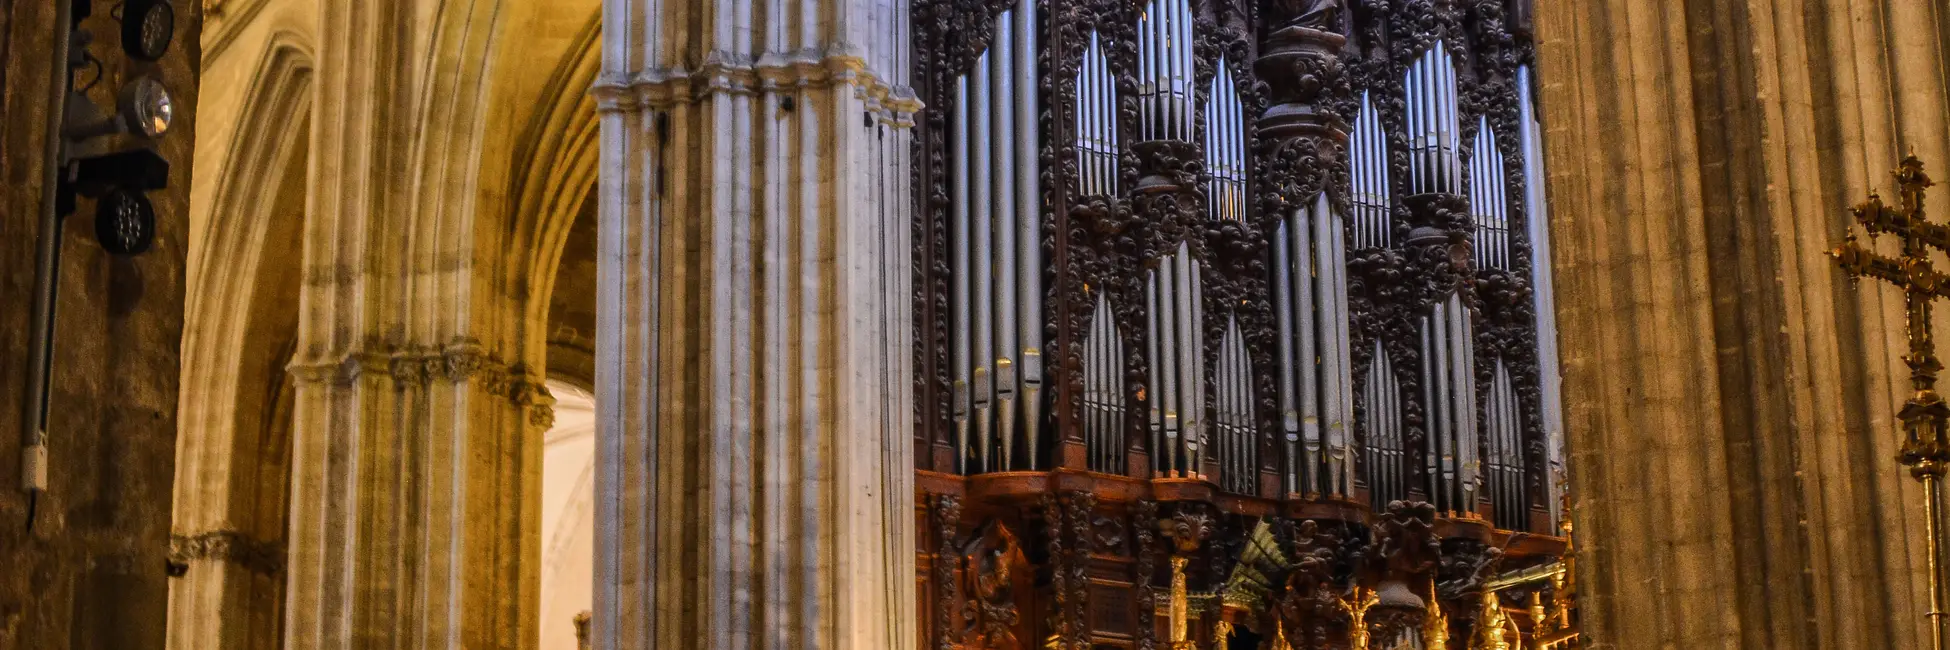 Intérieur de la cathédrale de Séville 